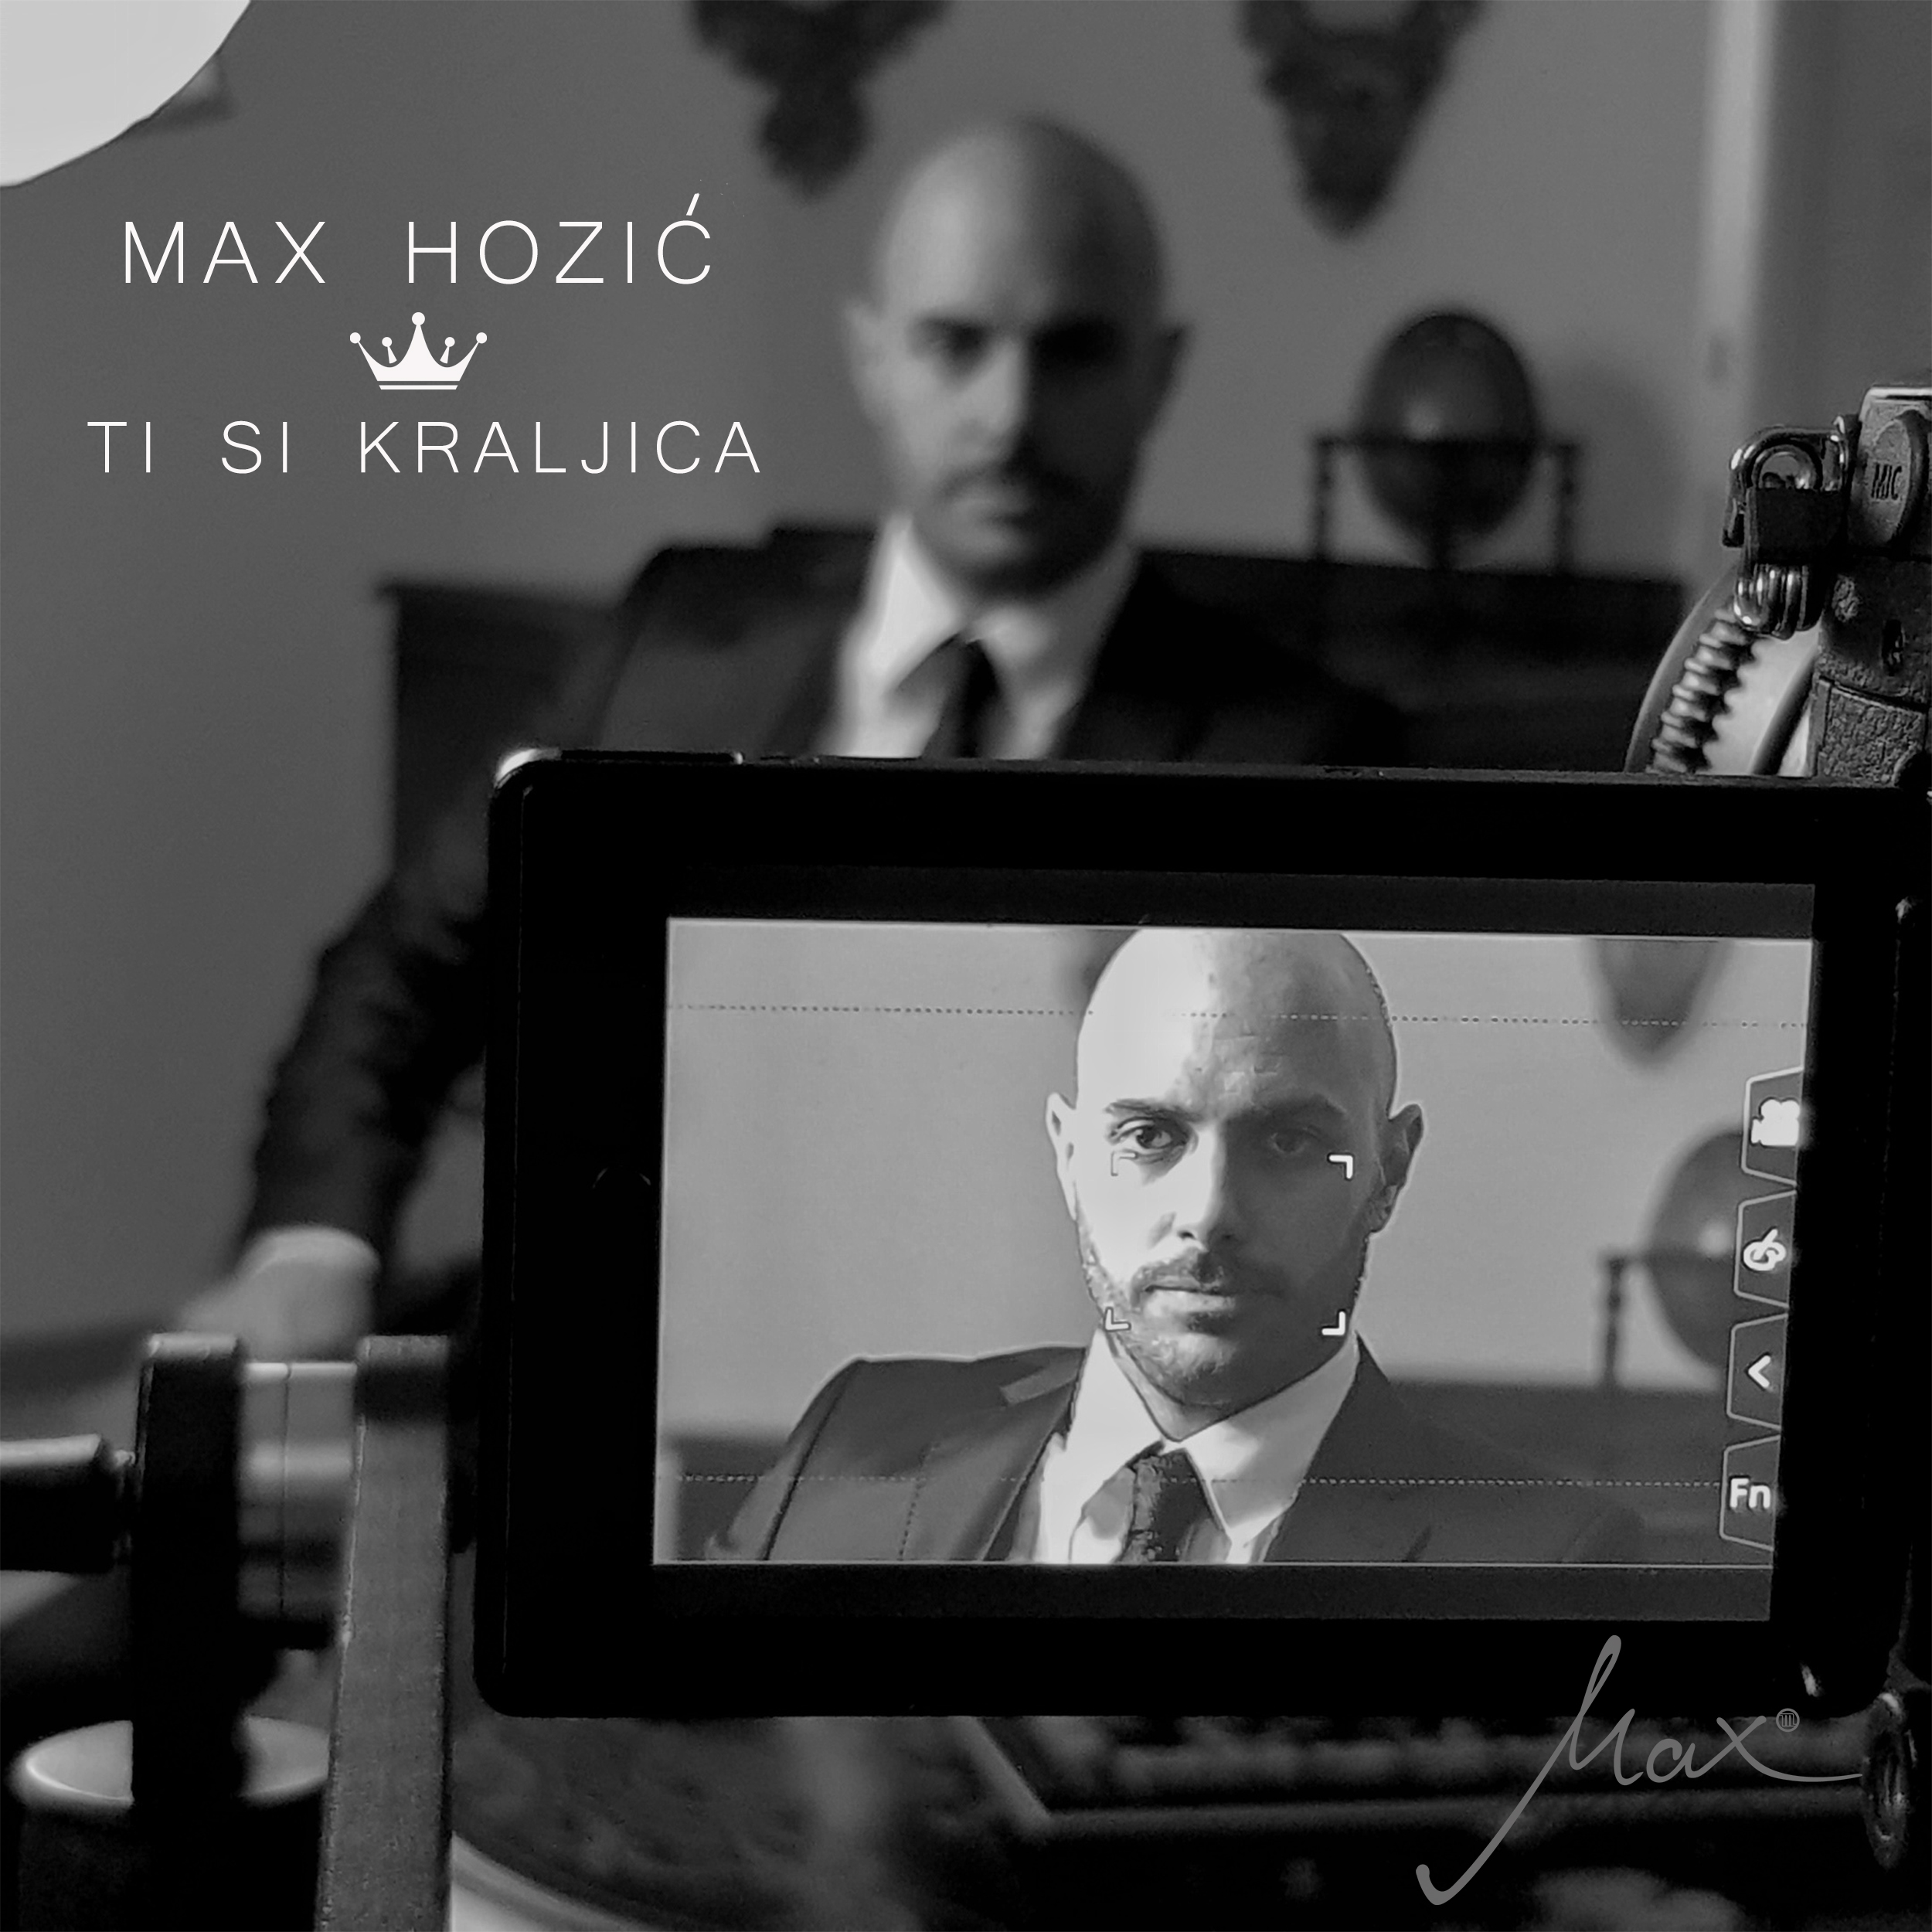 Trenutno pregledavate Max Hozić snimio video spot za singl ‘Ti si kraljica’ u kojem glumi poznata glumica i pjevačica Vanda Winter